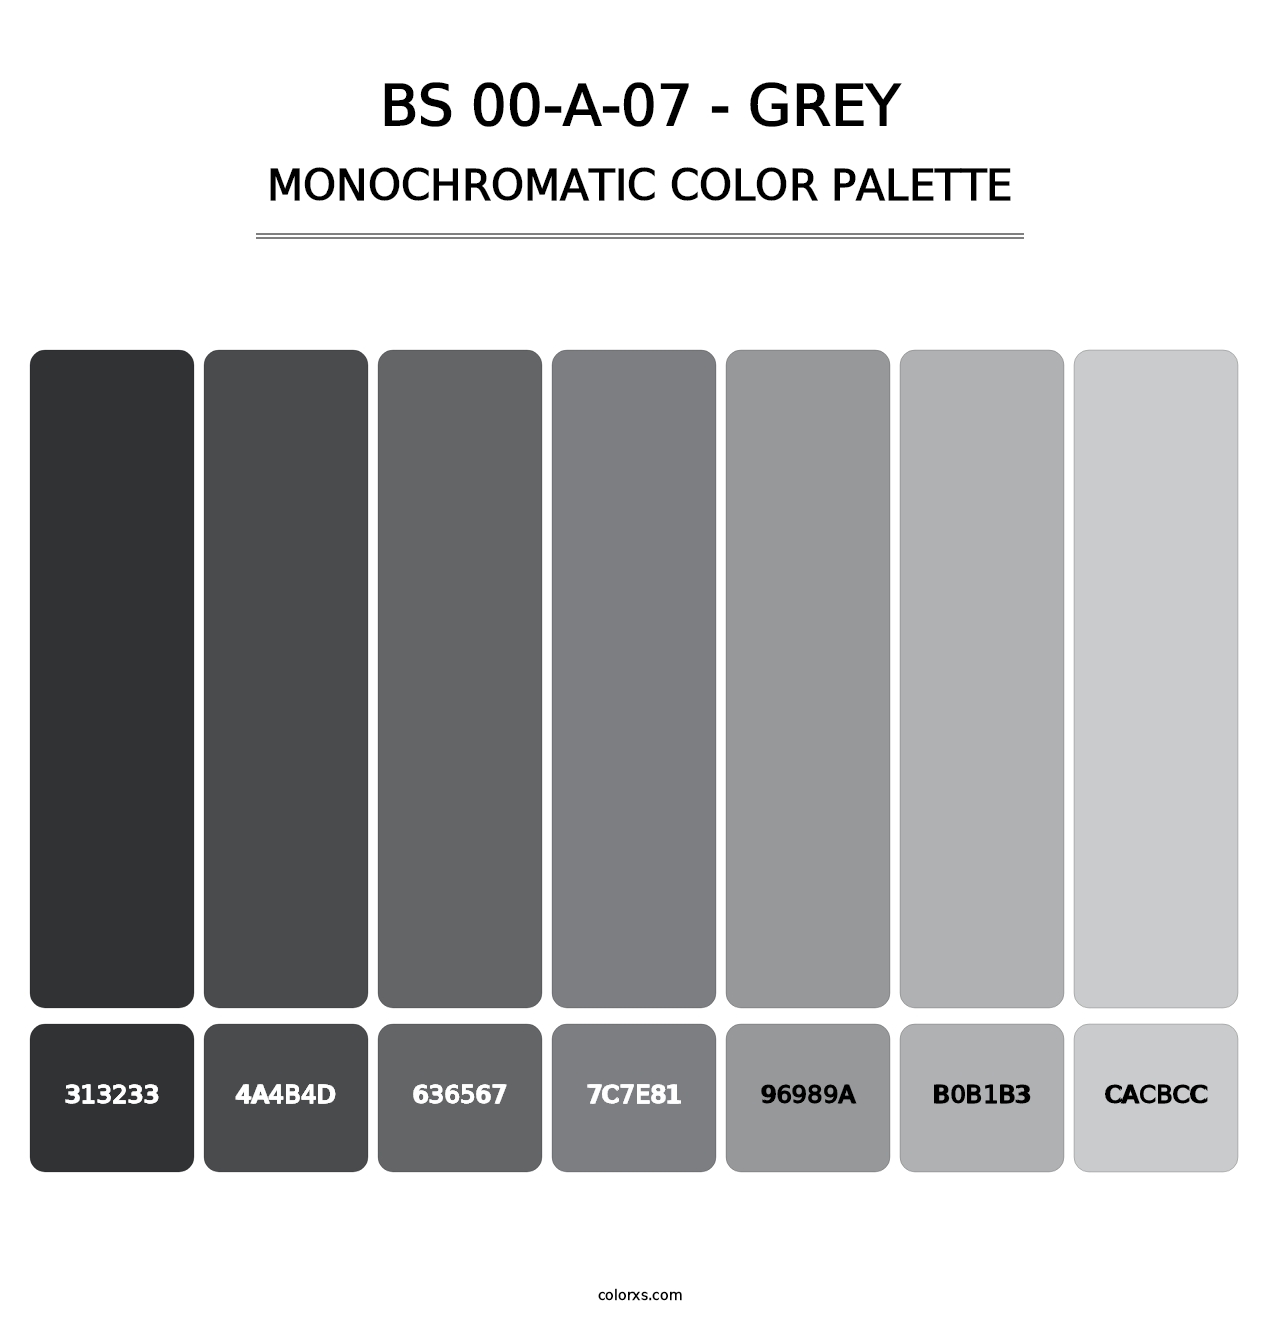 BS 00-A-07 - Grey - Monochromatic Color Palette